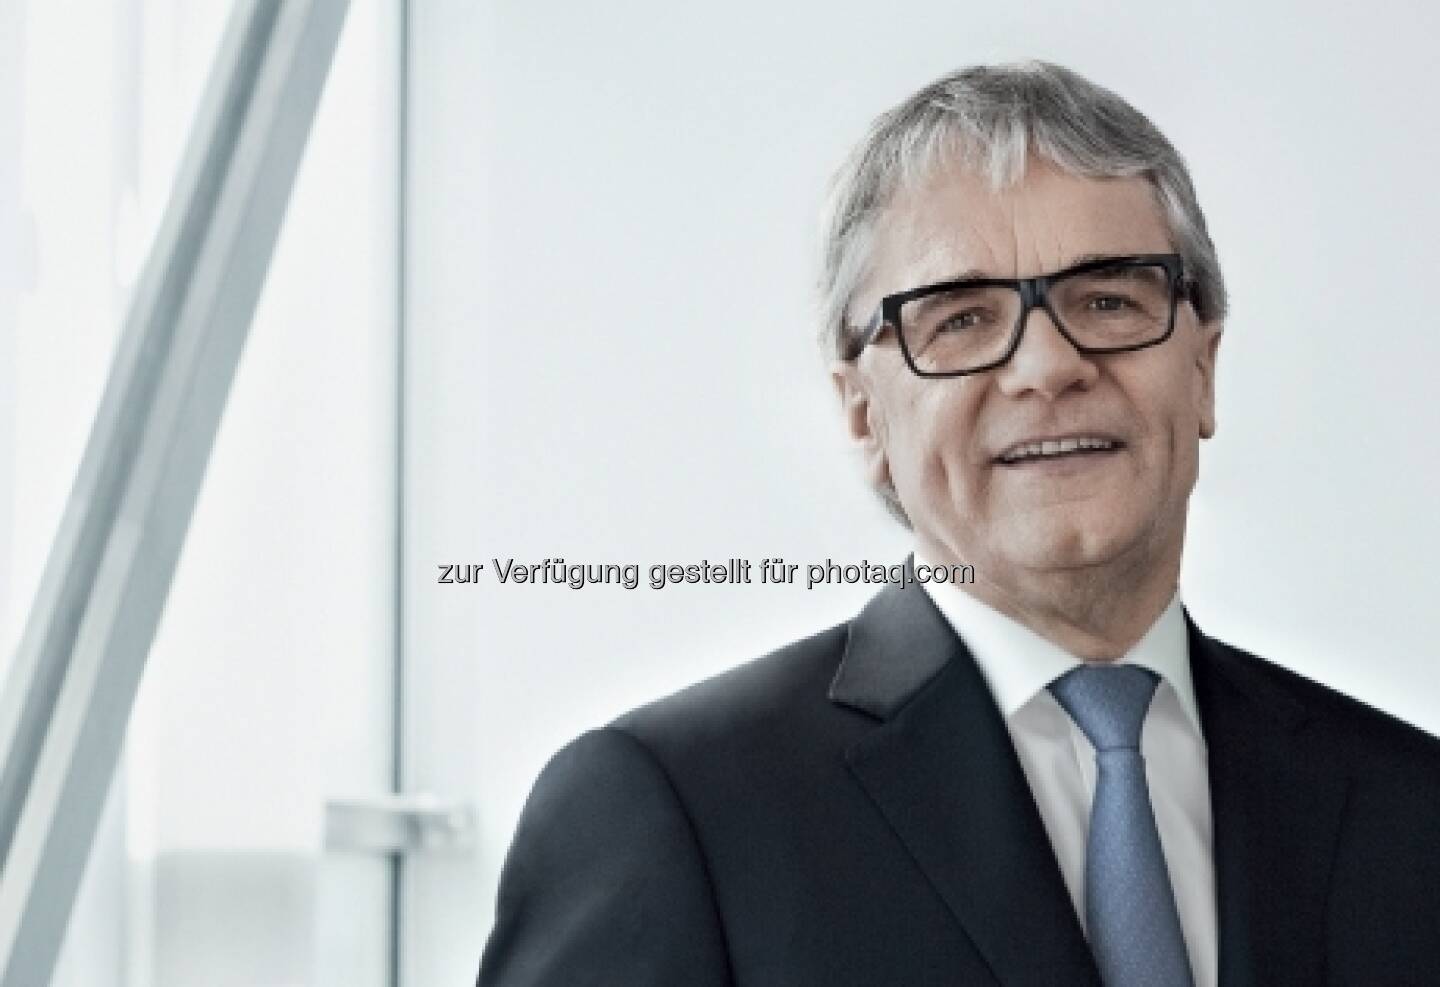 Für 5 Jahre wiederbestellt: Wolfgang Eder - Vorsitzender des Vorstandes und CEO der voestalpine AG / Leitung der Steel Division